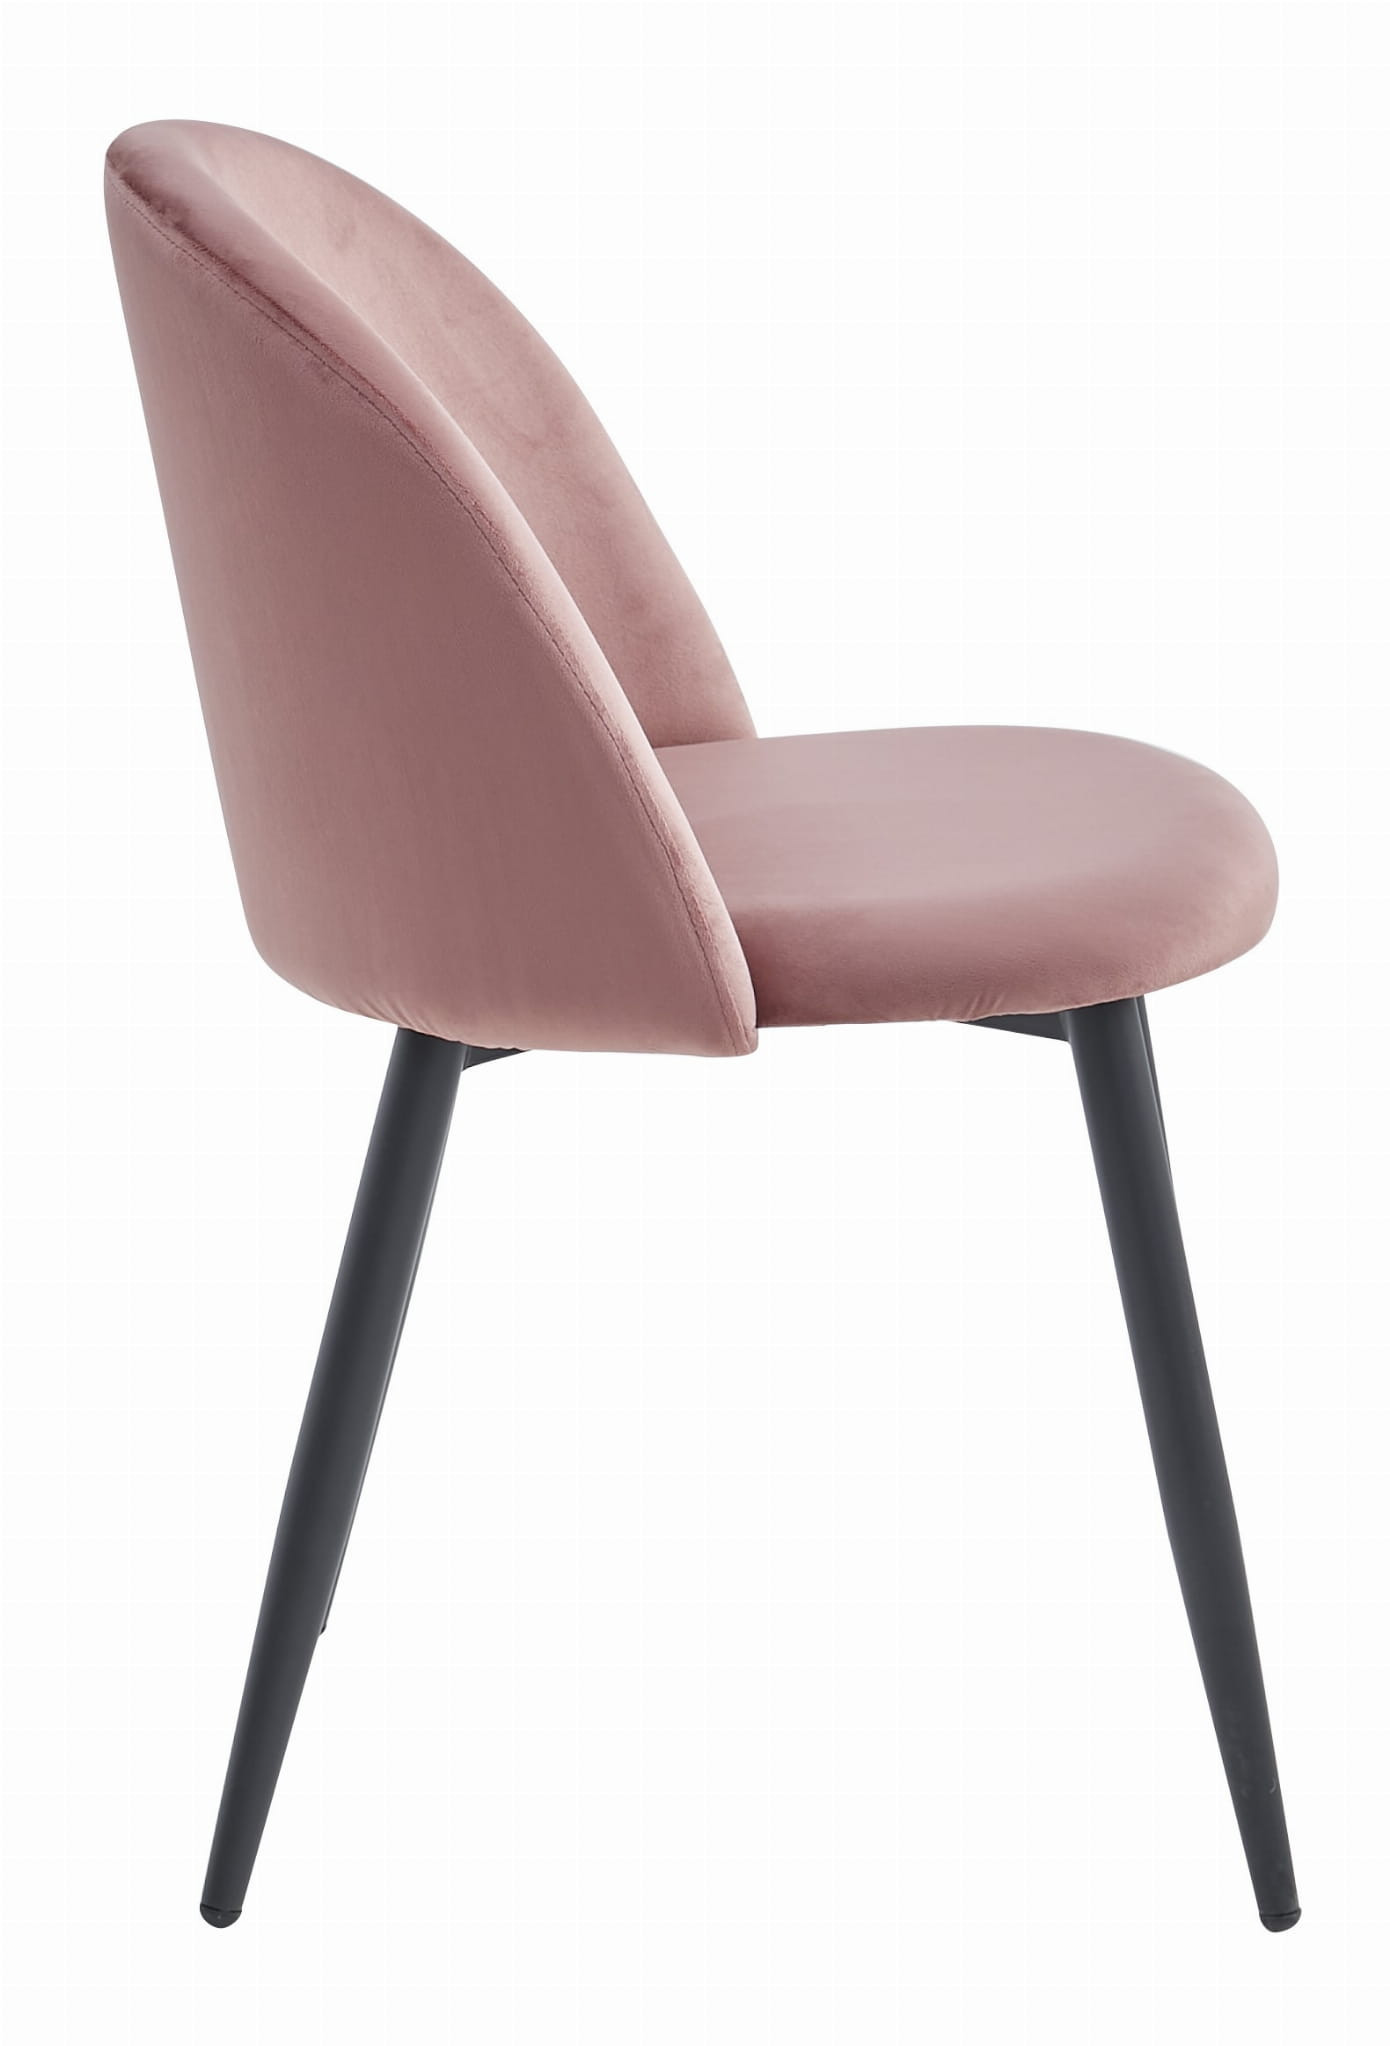 Set tří jídelních židlí BELLO sametové tmavě růžové (černé nohy) 3ks